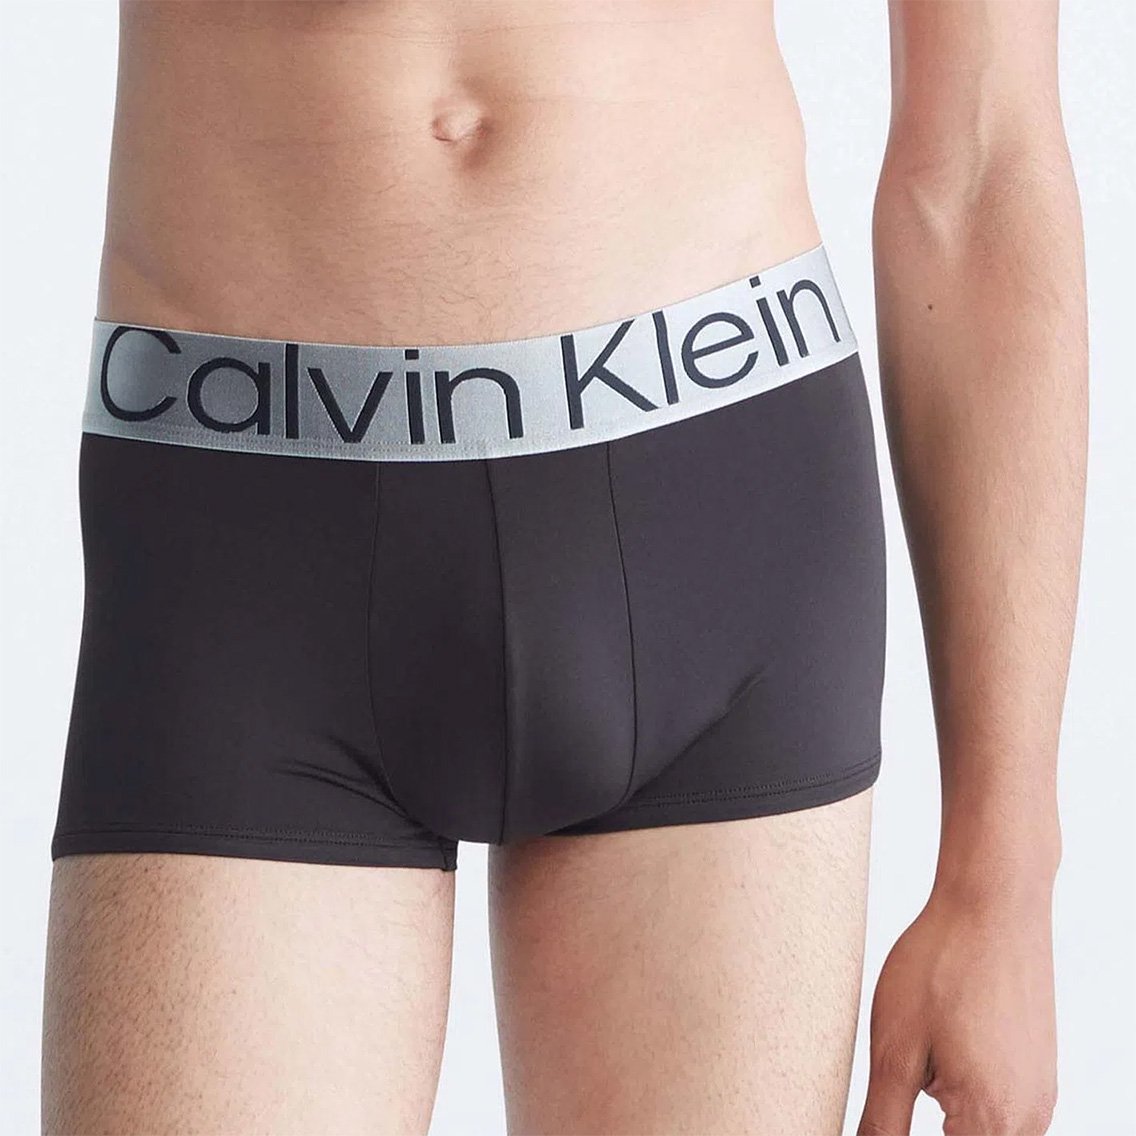 Calvin Klein(カルバンクライン)[NB3074-911]:ボクサーパンツ,男性下着 